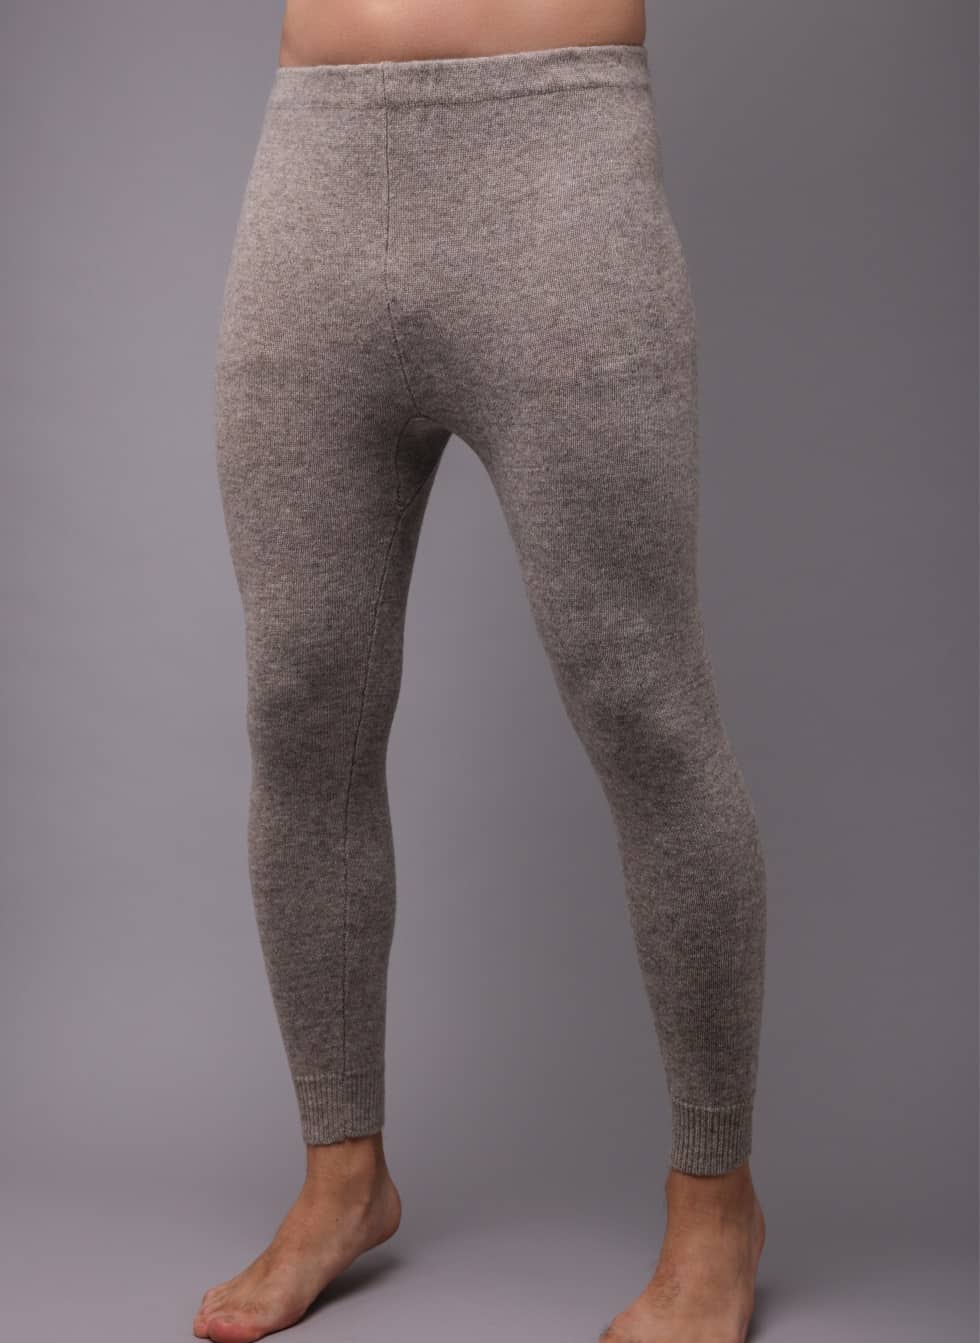 https://mongolianstore.com/wp-content/uploads/2018/11/Grey-Woolen-Mens-Underpants.jpg